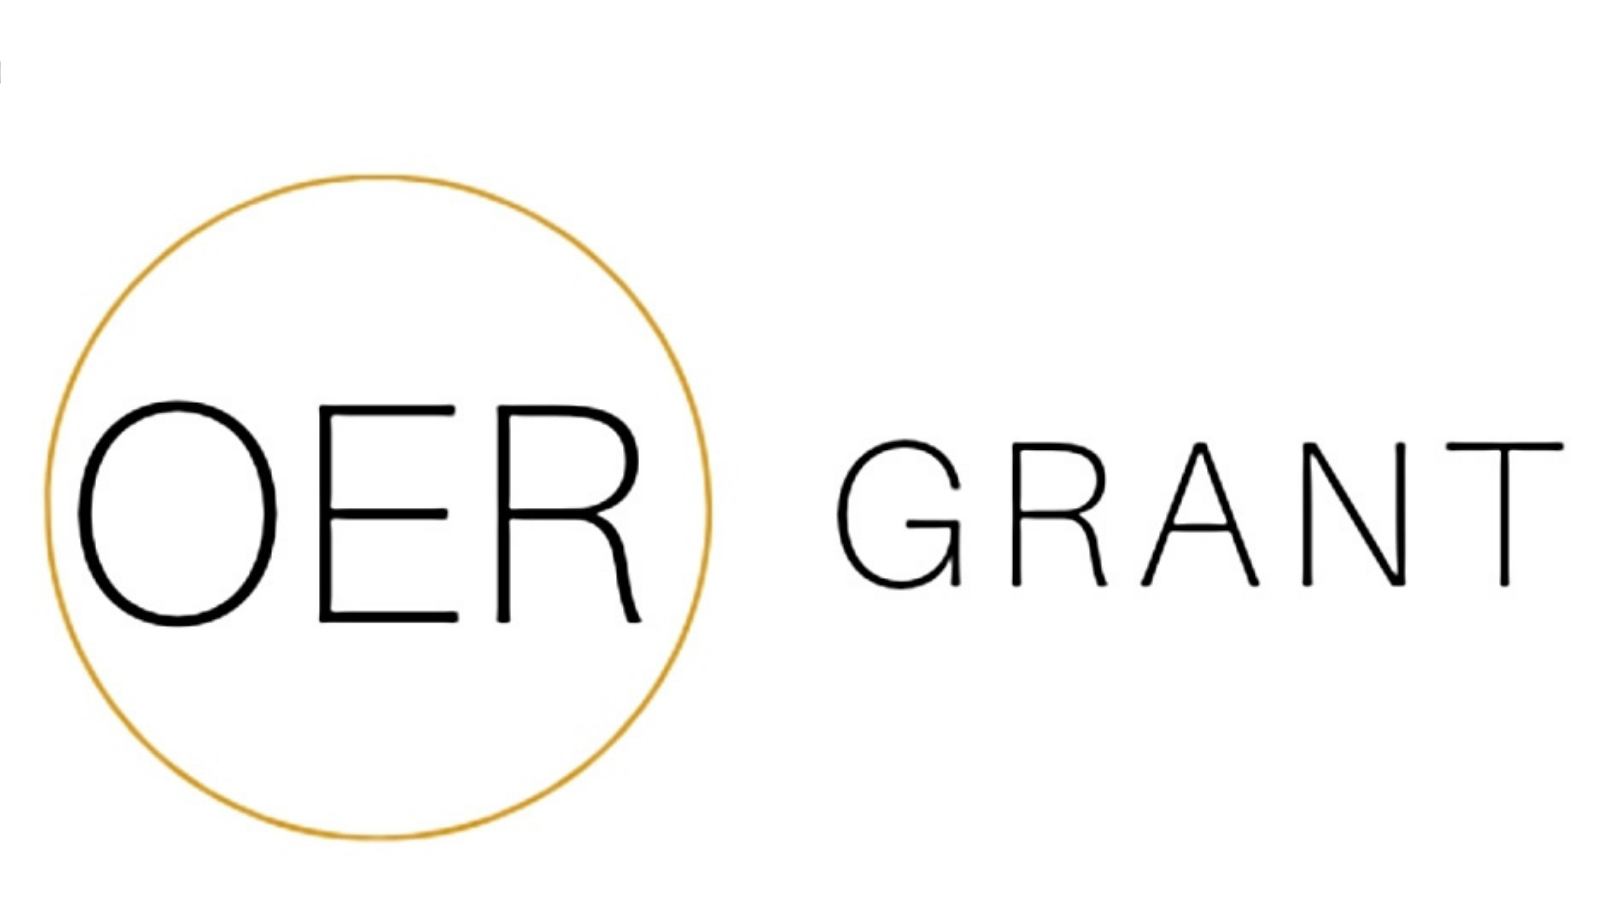 OER Grant logo